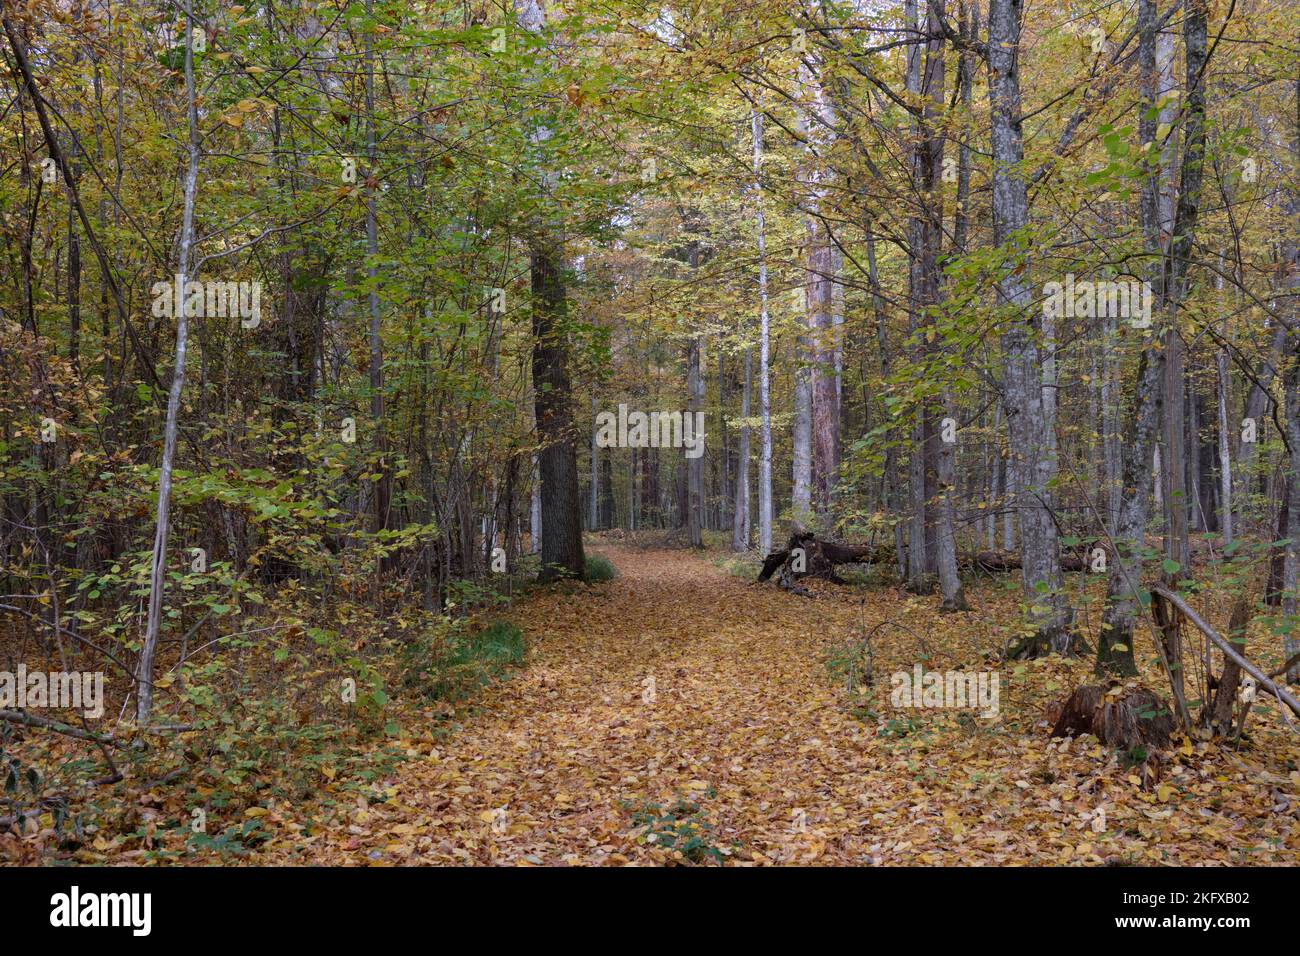 Autumnal à midi dans un peuplement de forêt à feuilles caduques avec de vieux chênes et un stand étroit de franchissement de route de terre, forêt de Bialowieza, Pologne, Europe Banque D'Images